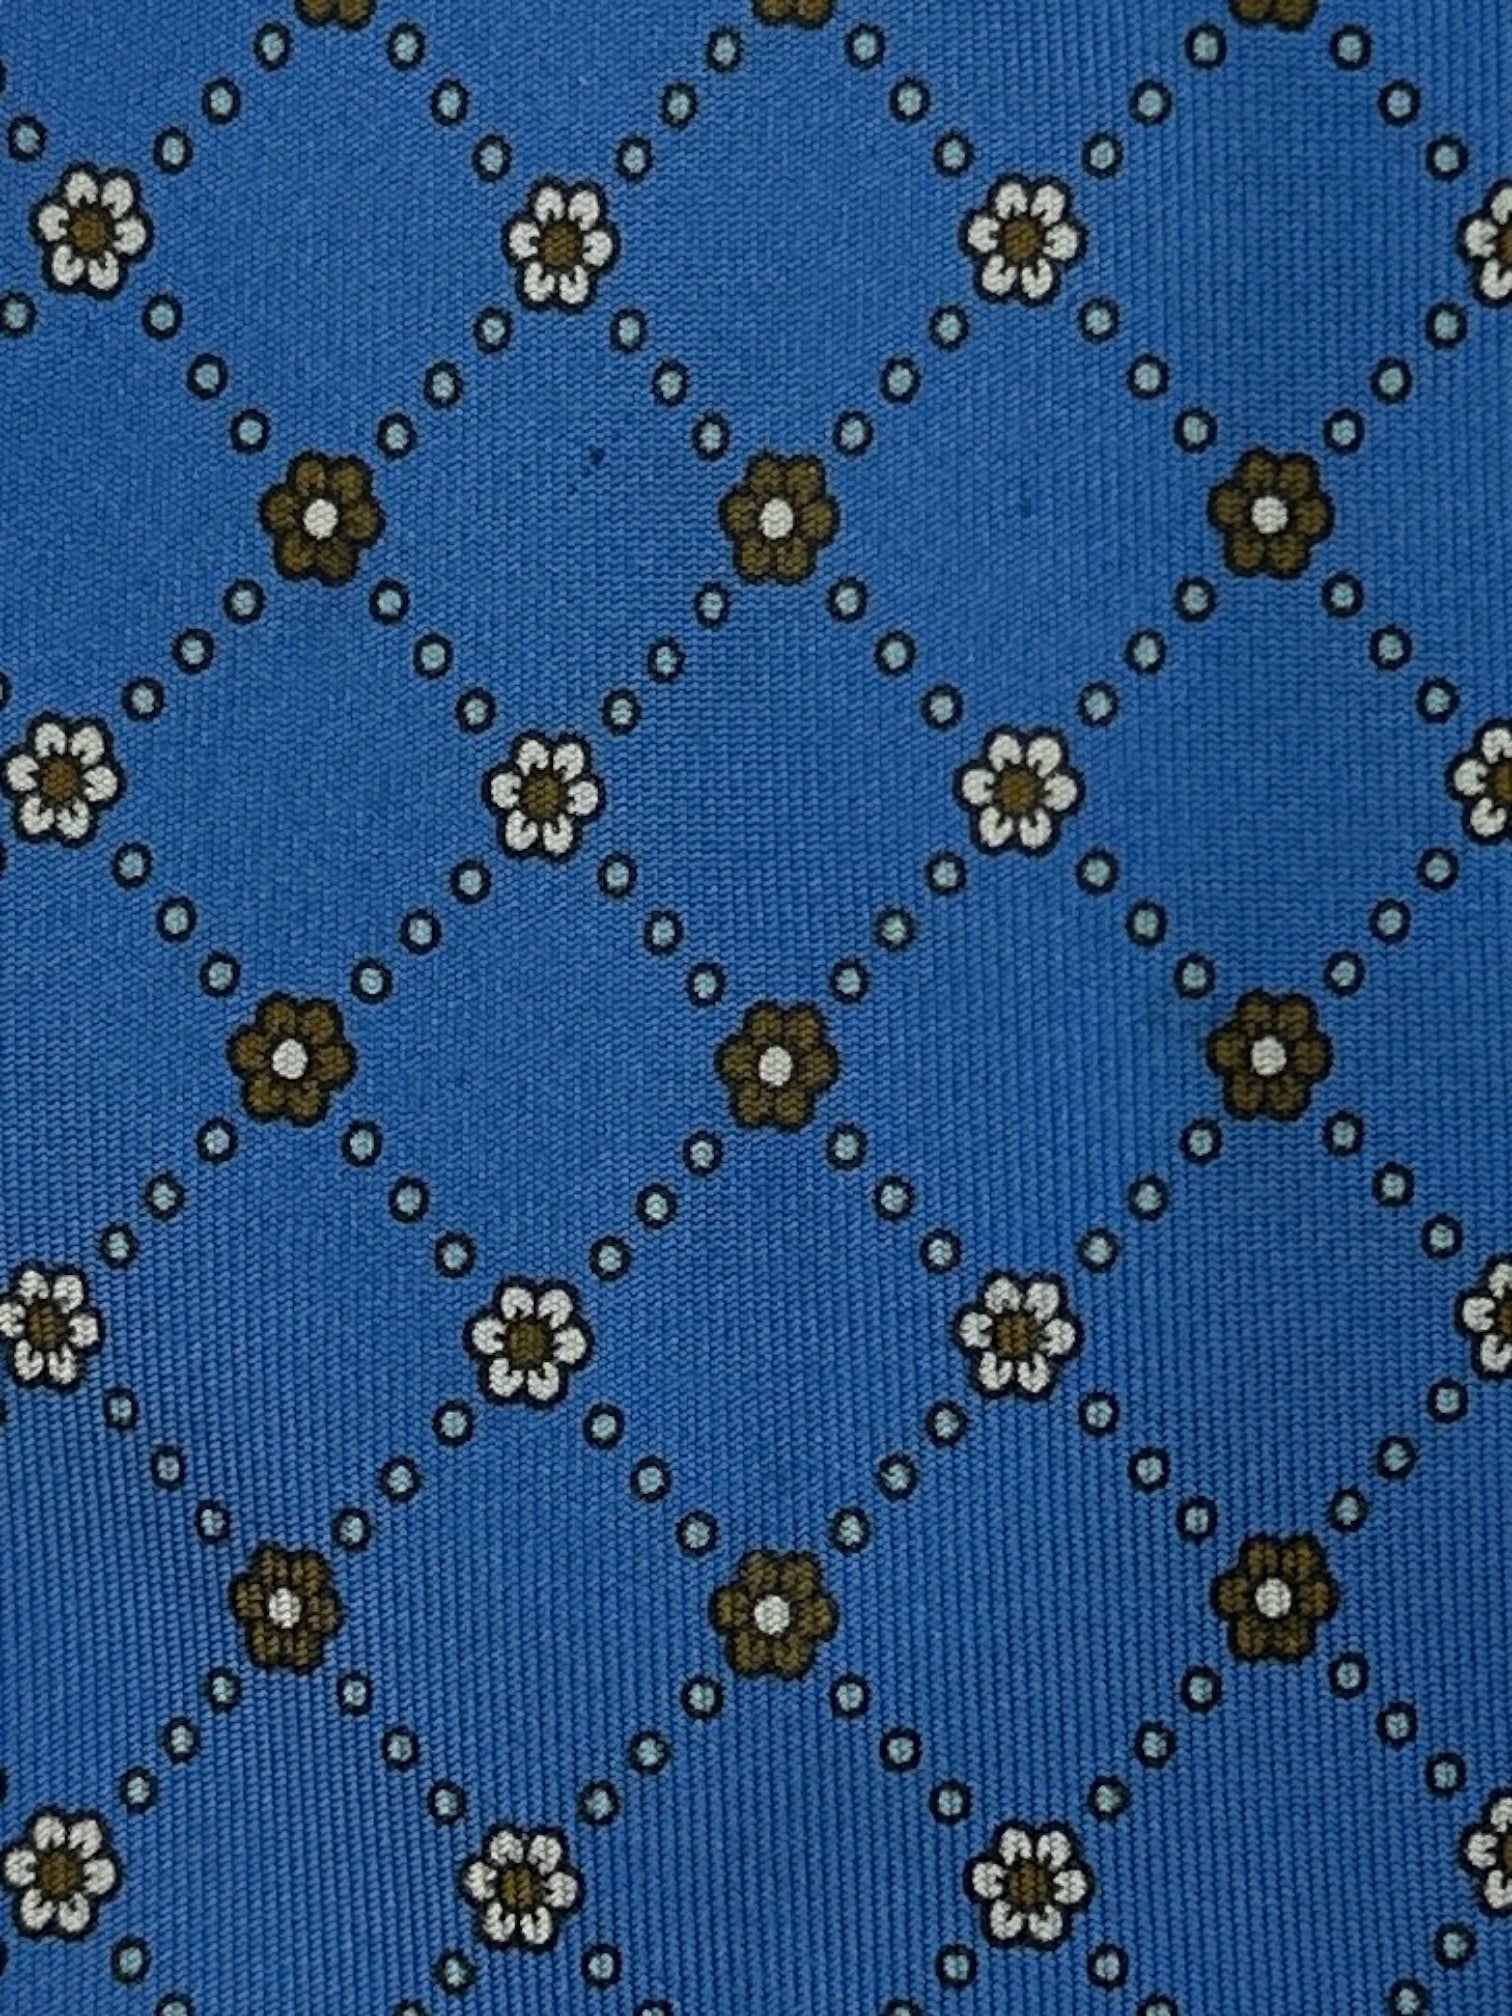 E.Marinella Royal Blue Micro Floral Tie